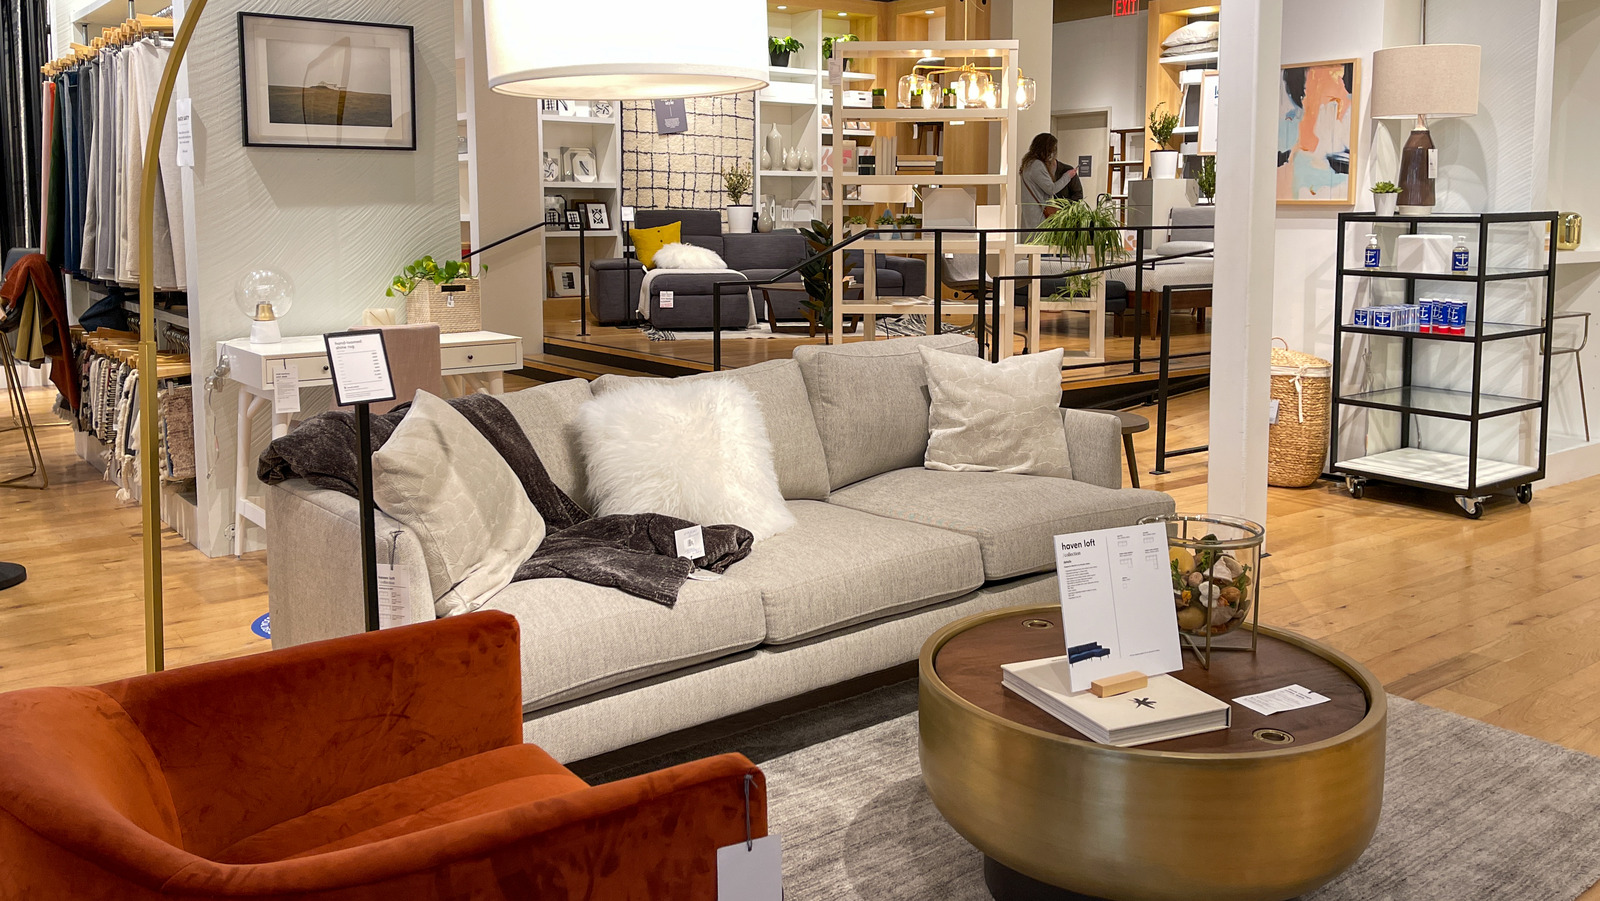 West Elm home furnishings store in Minneapolis' North Loop opens